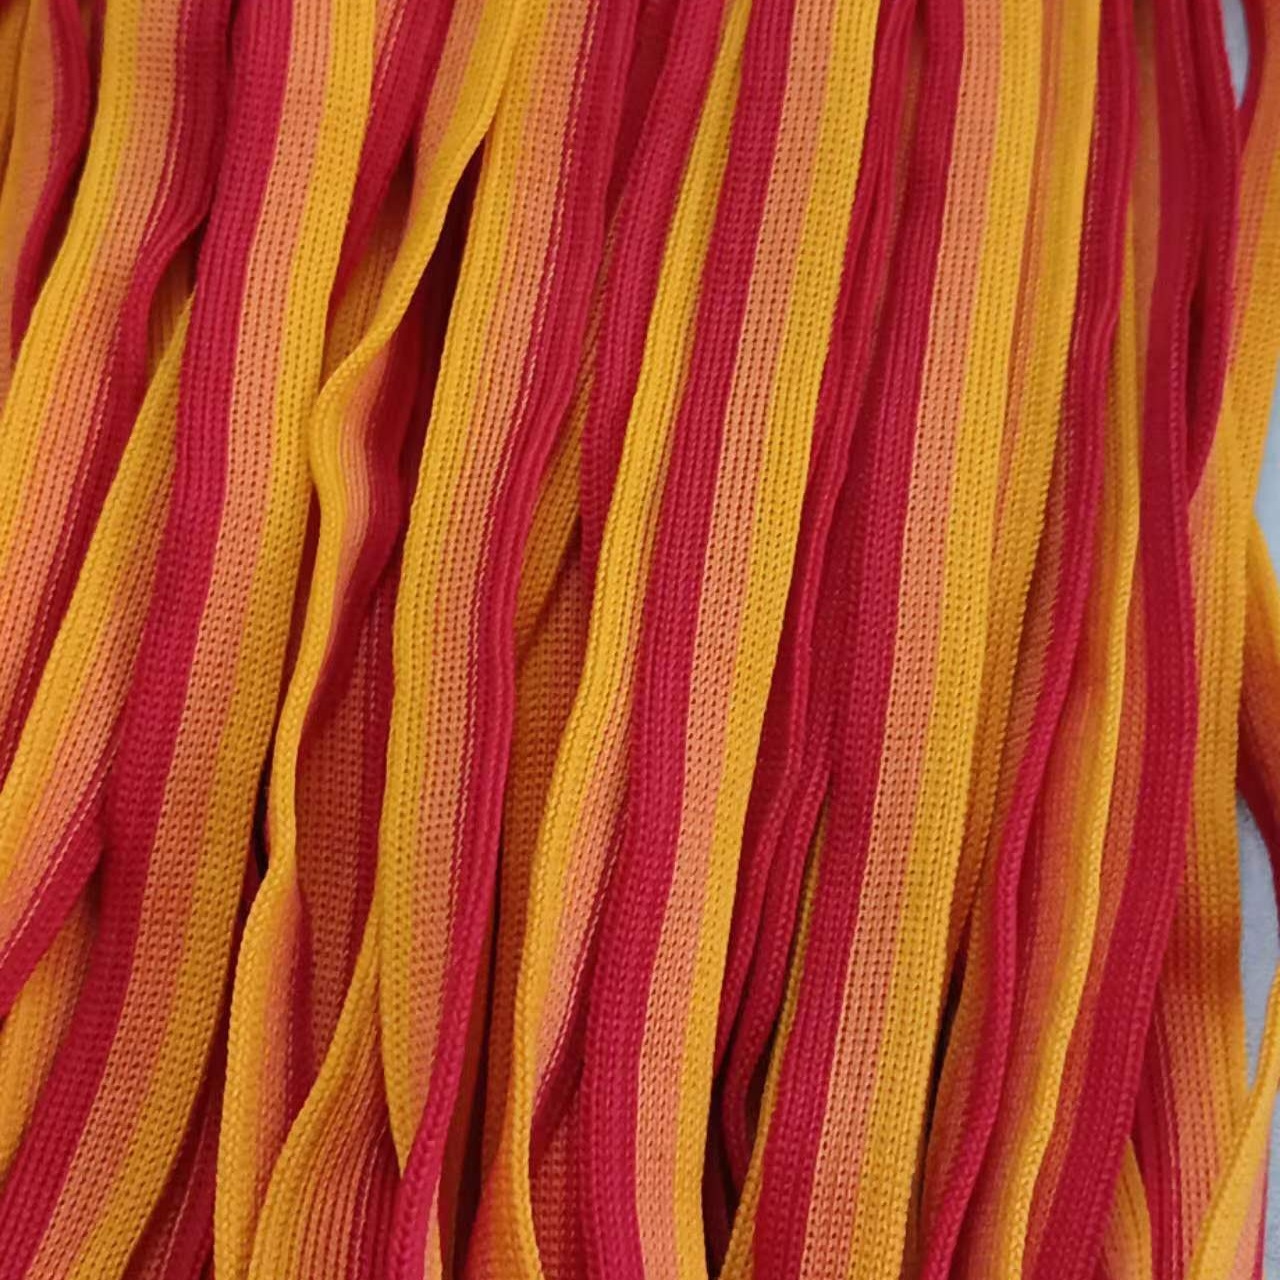 三涤纶间色针织带  涤纶织带  服装 工艺品   辅料  批发定制  涤纶针织带